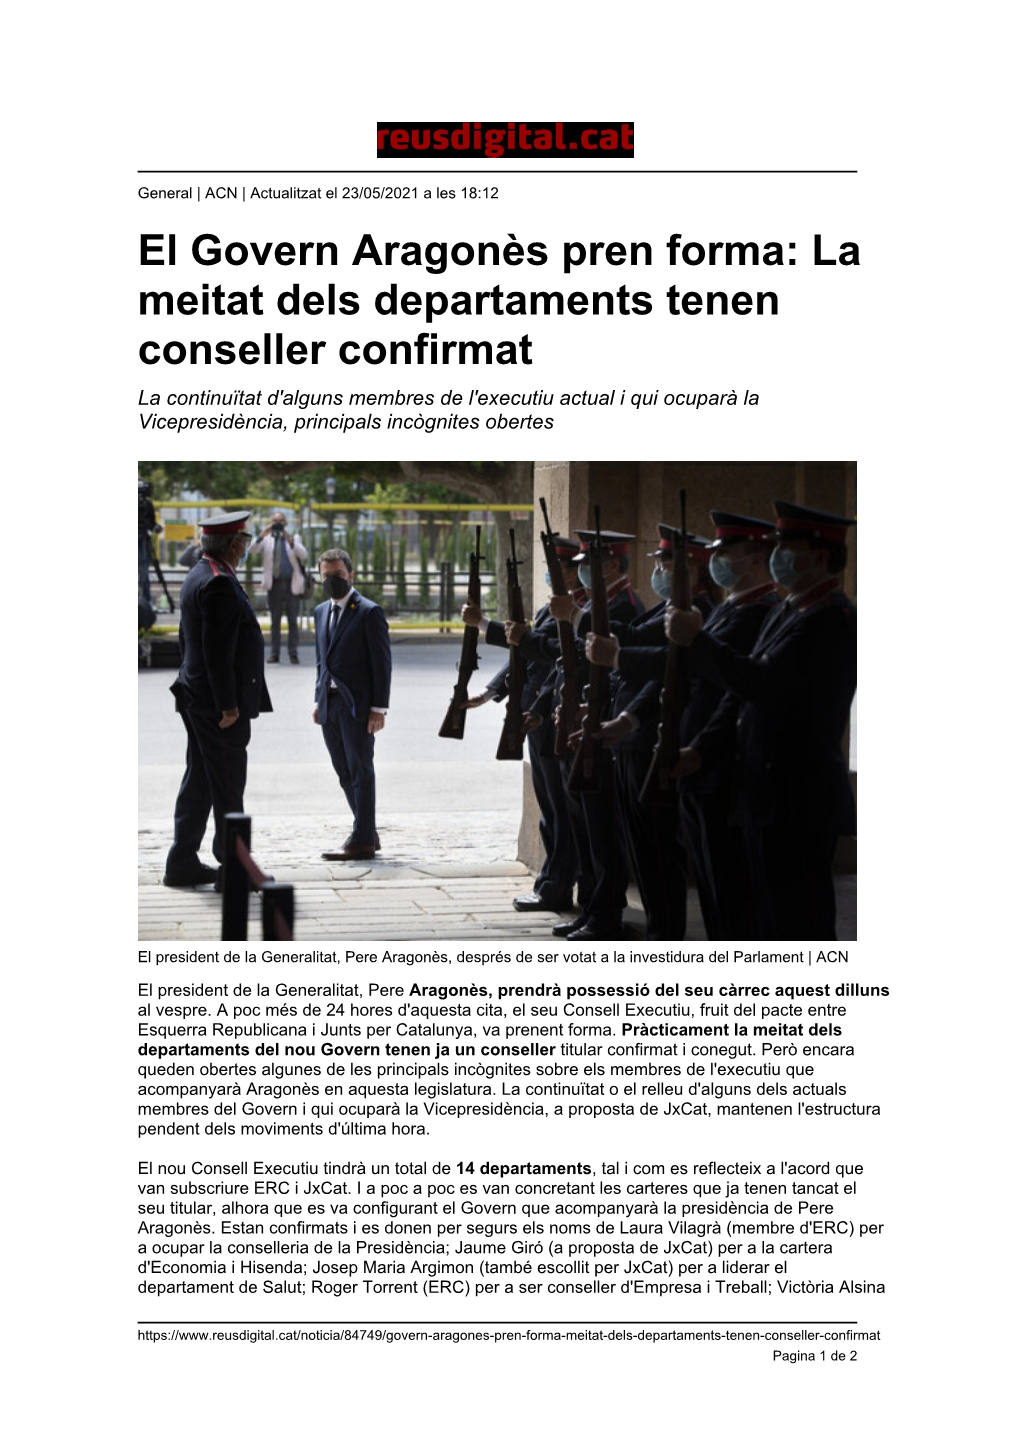 El Govern Aragonès Pren Forma: La Meitat Dels Departaments Tenen